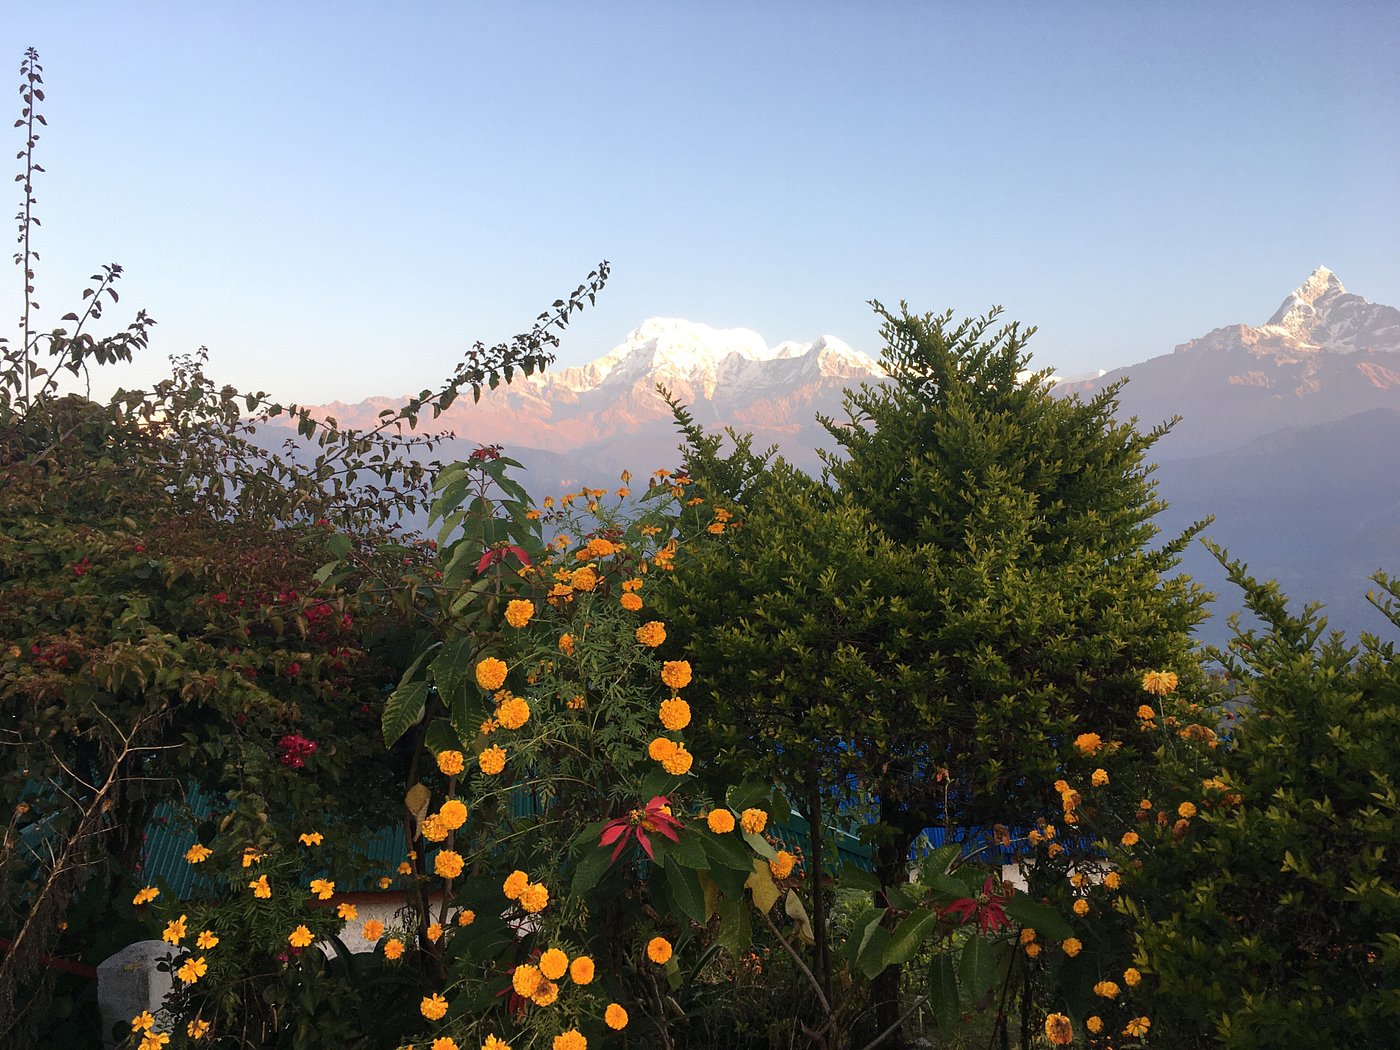 deurali travel and tours pokhara